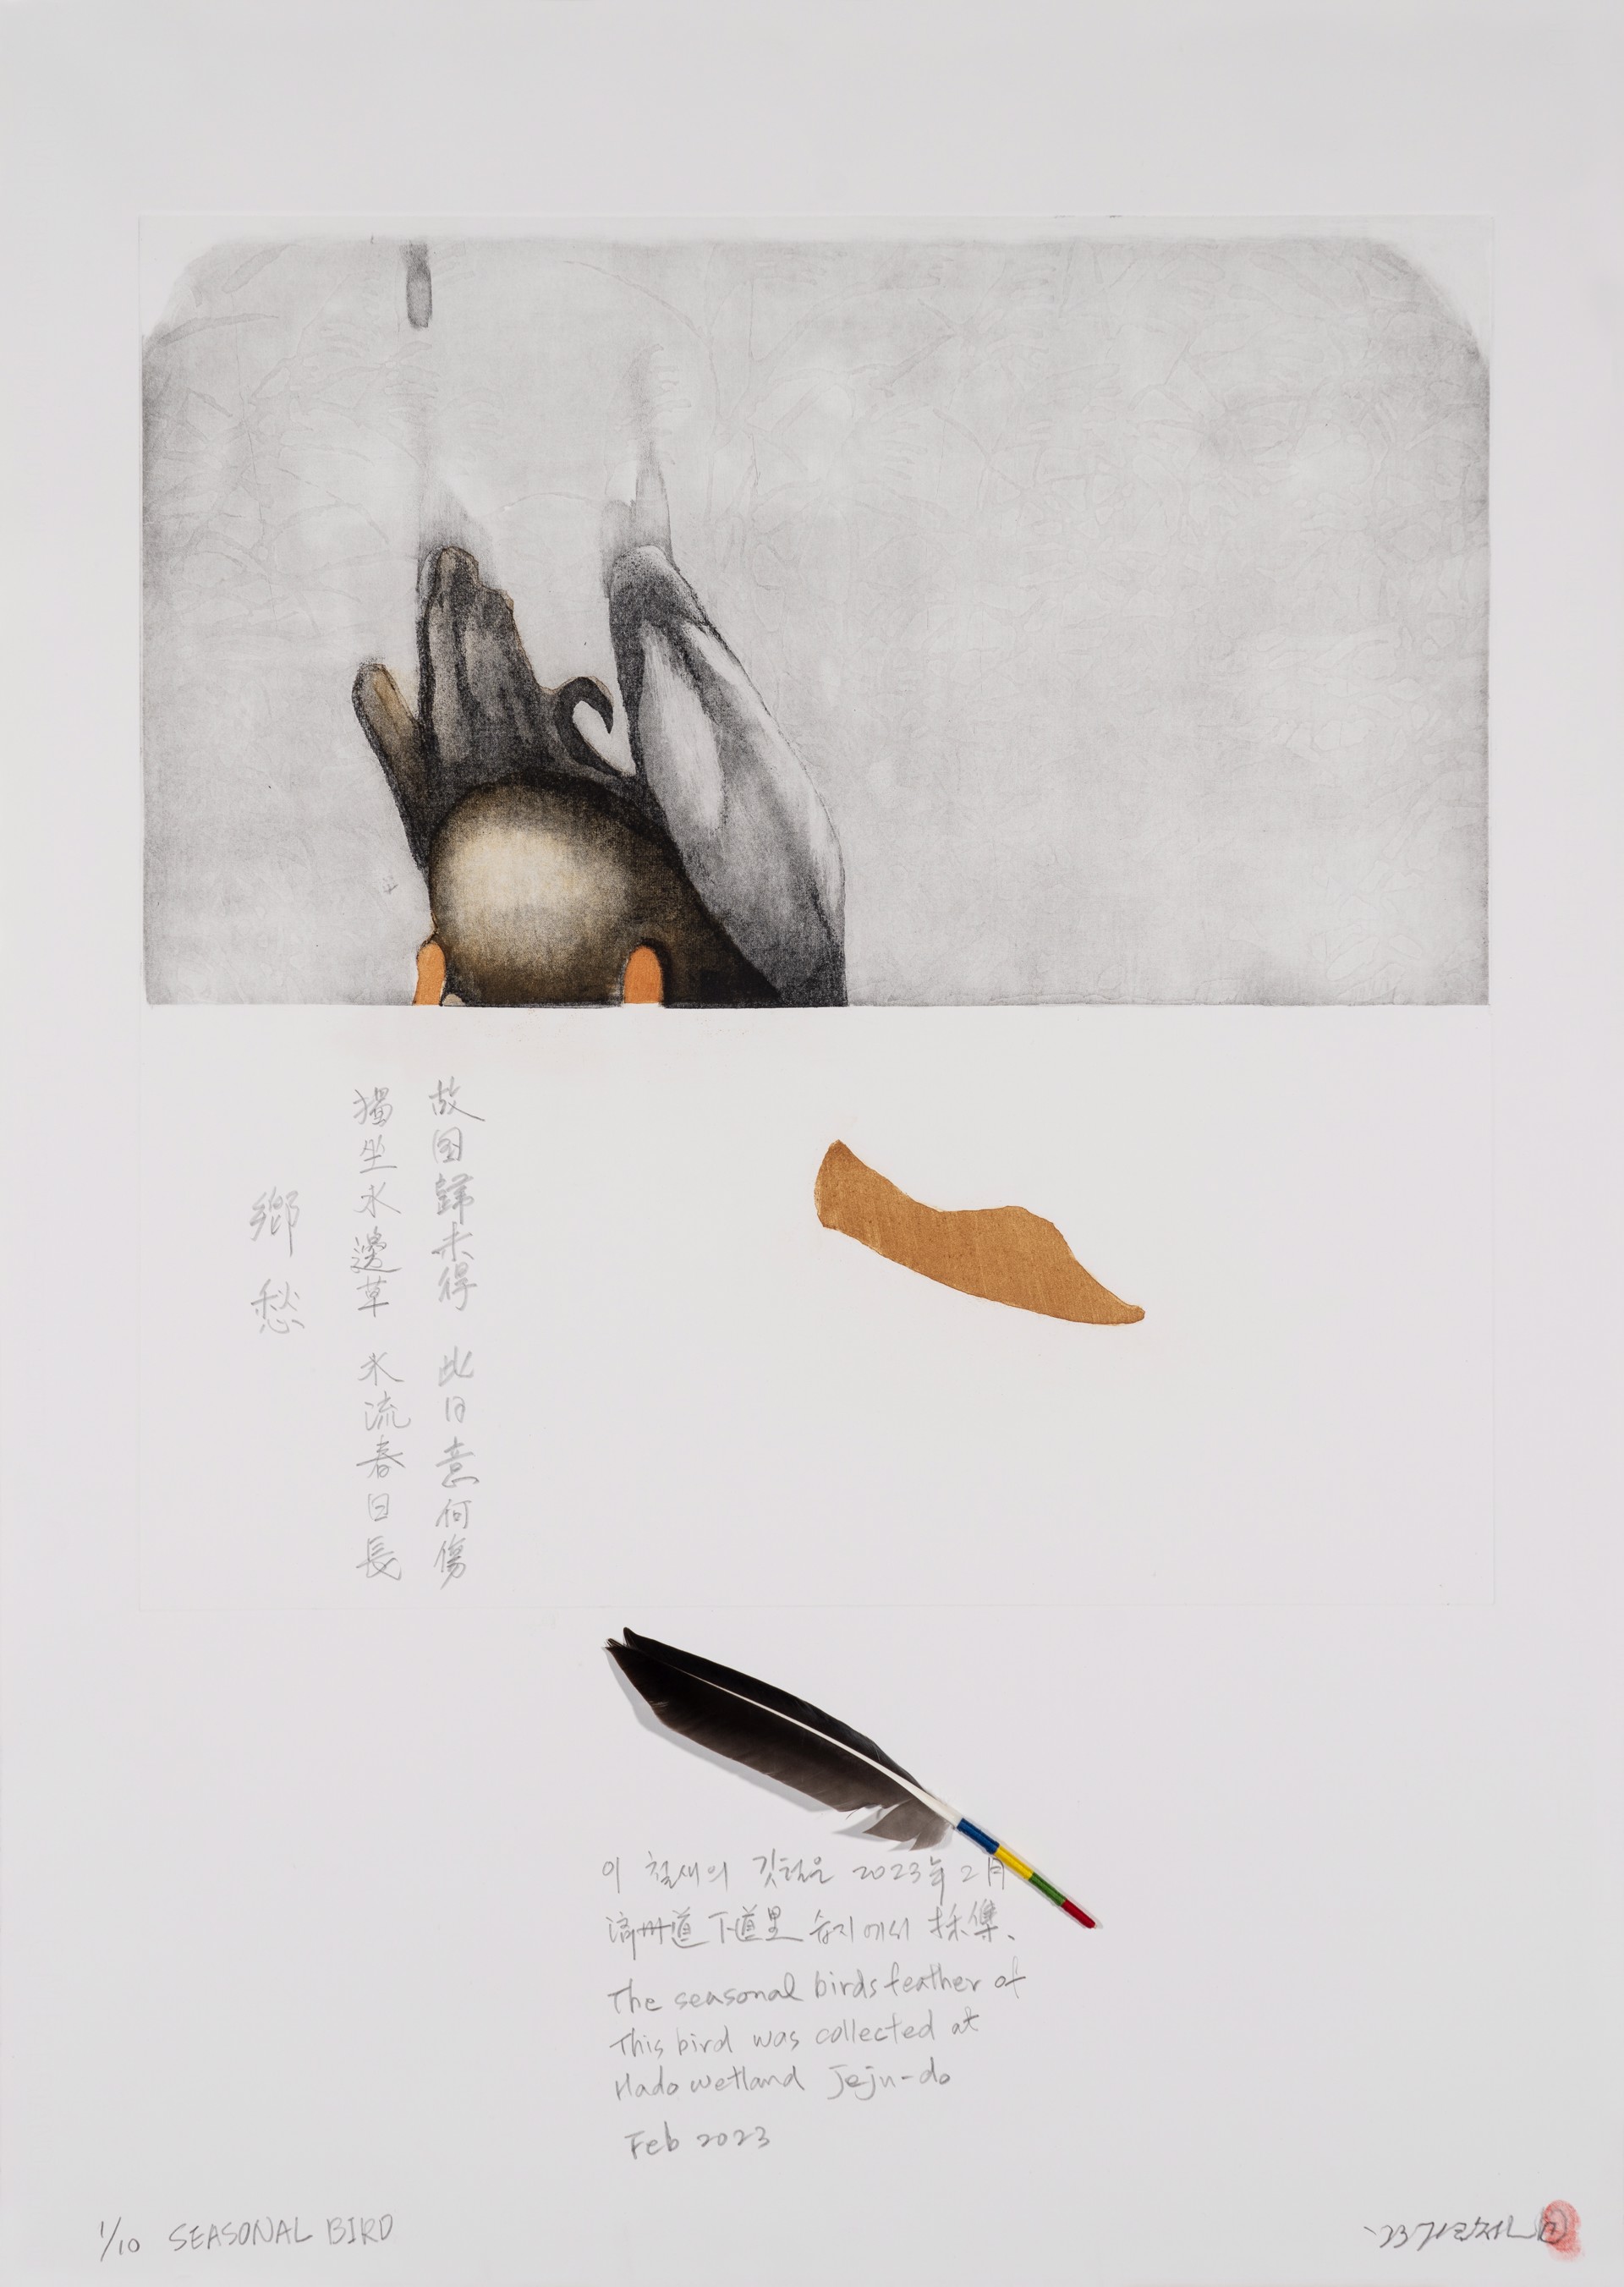 Nostalgia - Seasonal Bird by Gilchun Koh